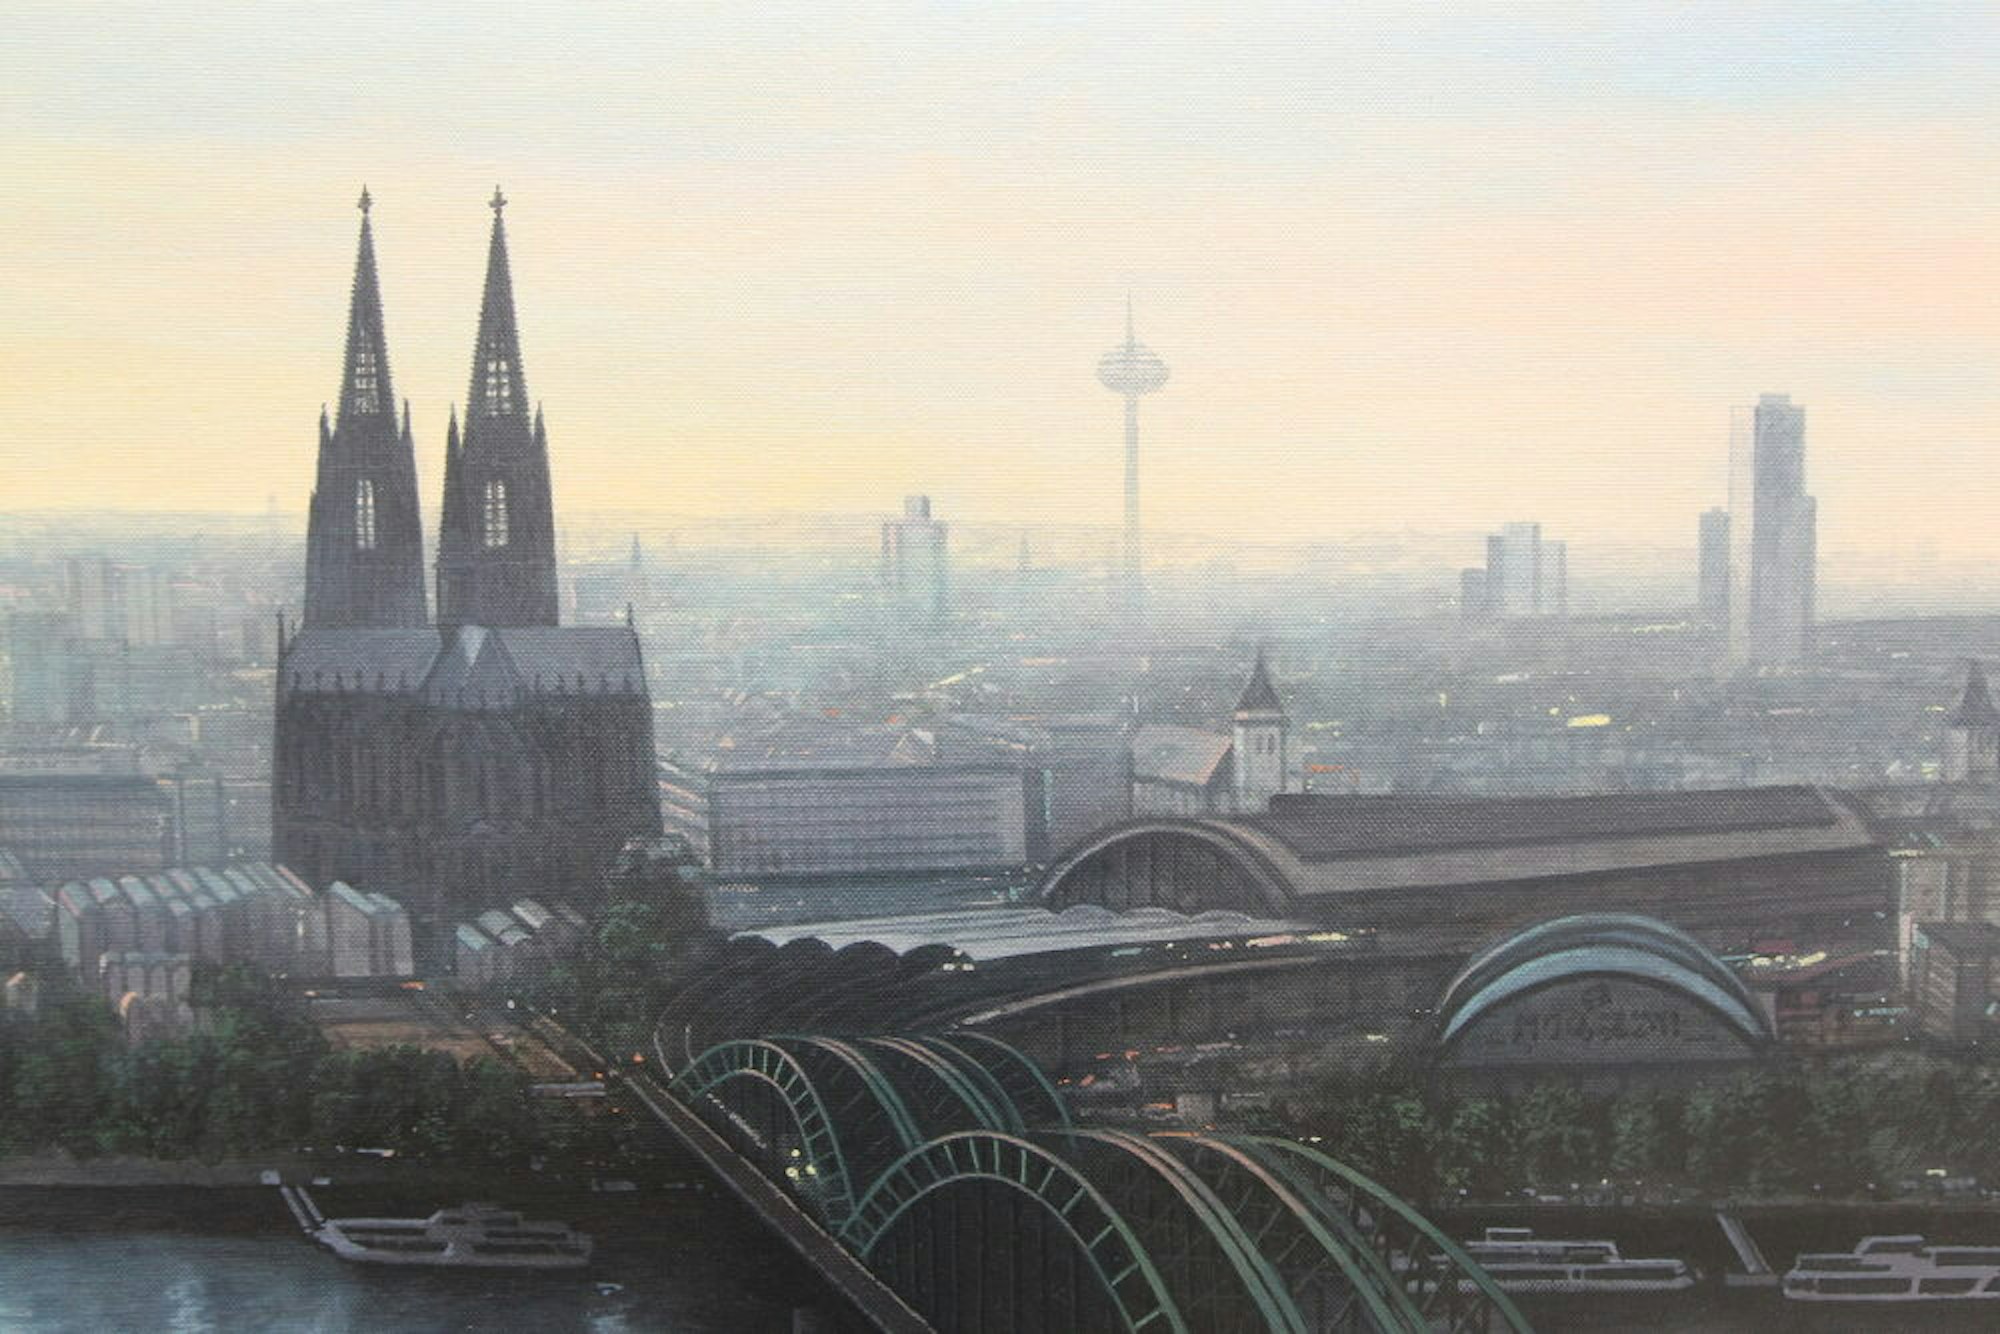 Mit Akkuratesse fängt der Künstler das Panorama der Domstadt ein, hier aus einer seiner Lieblingsperspektiven vom LVR-Turm aus.